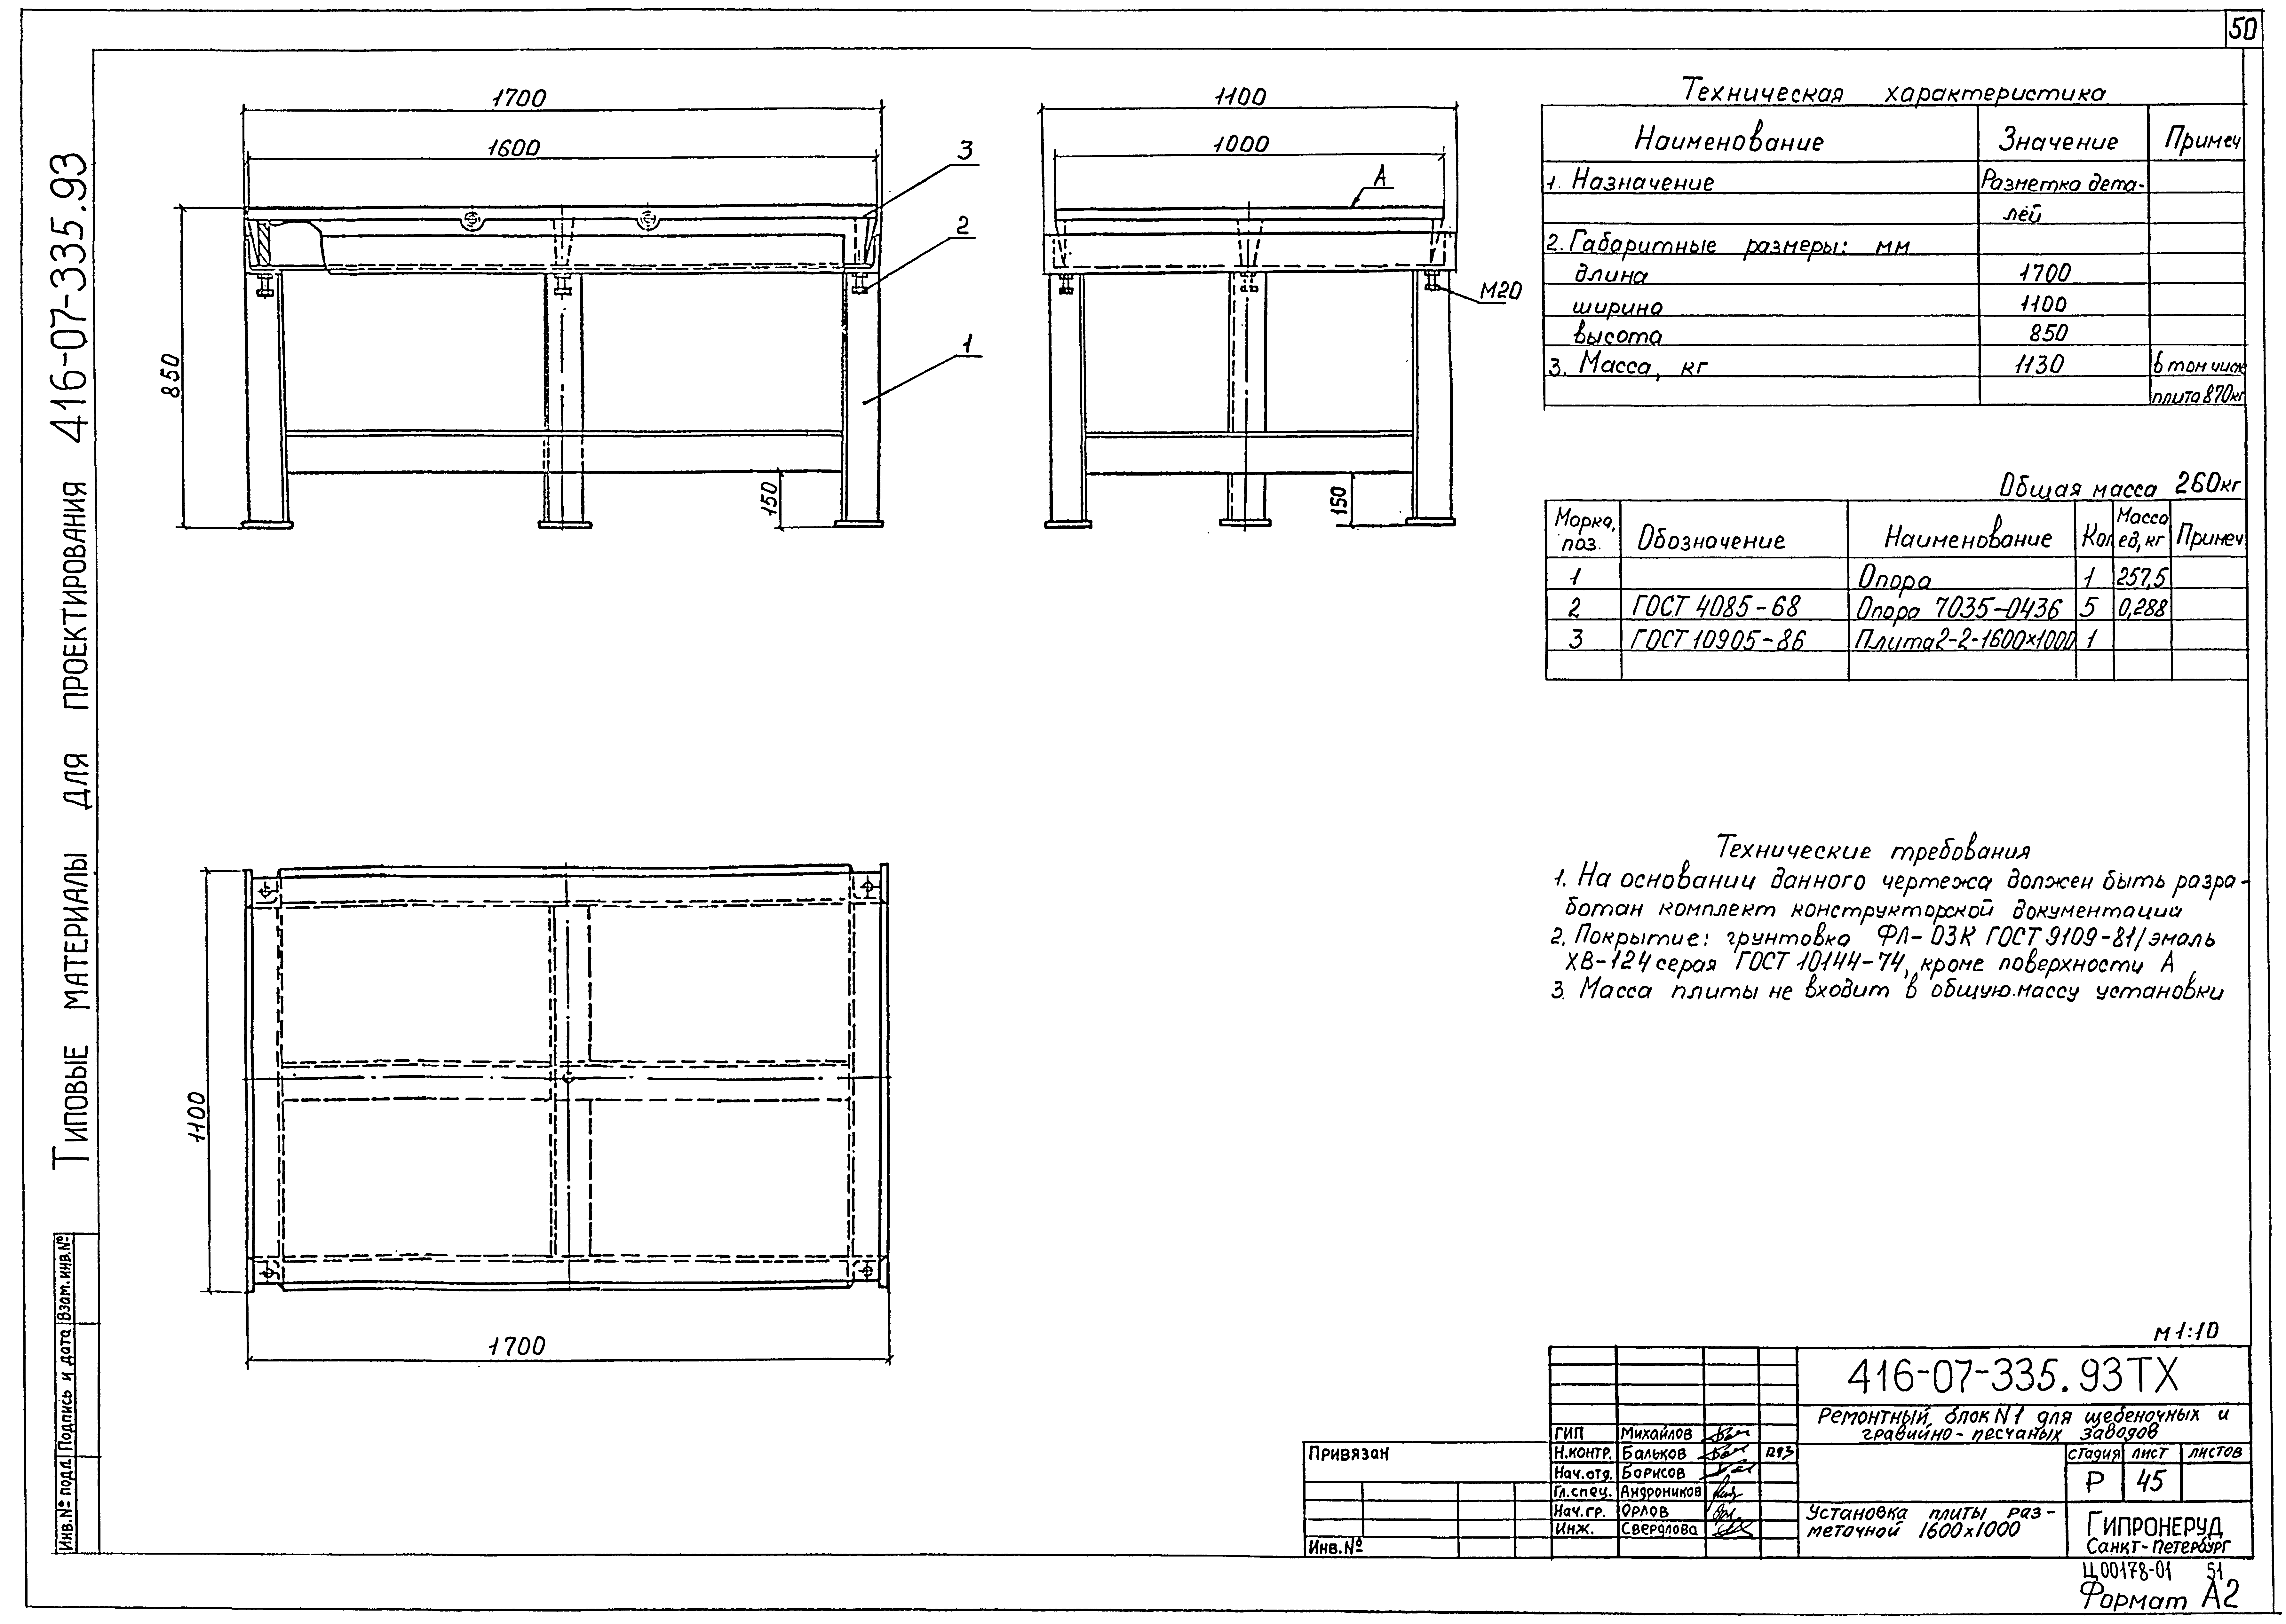 Типовые материалы для проектирования 416-07-335.93